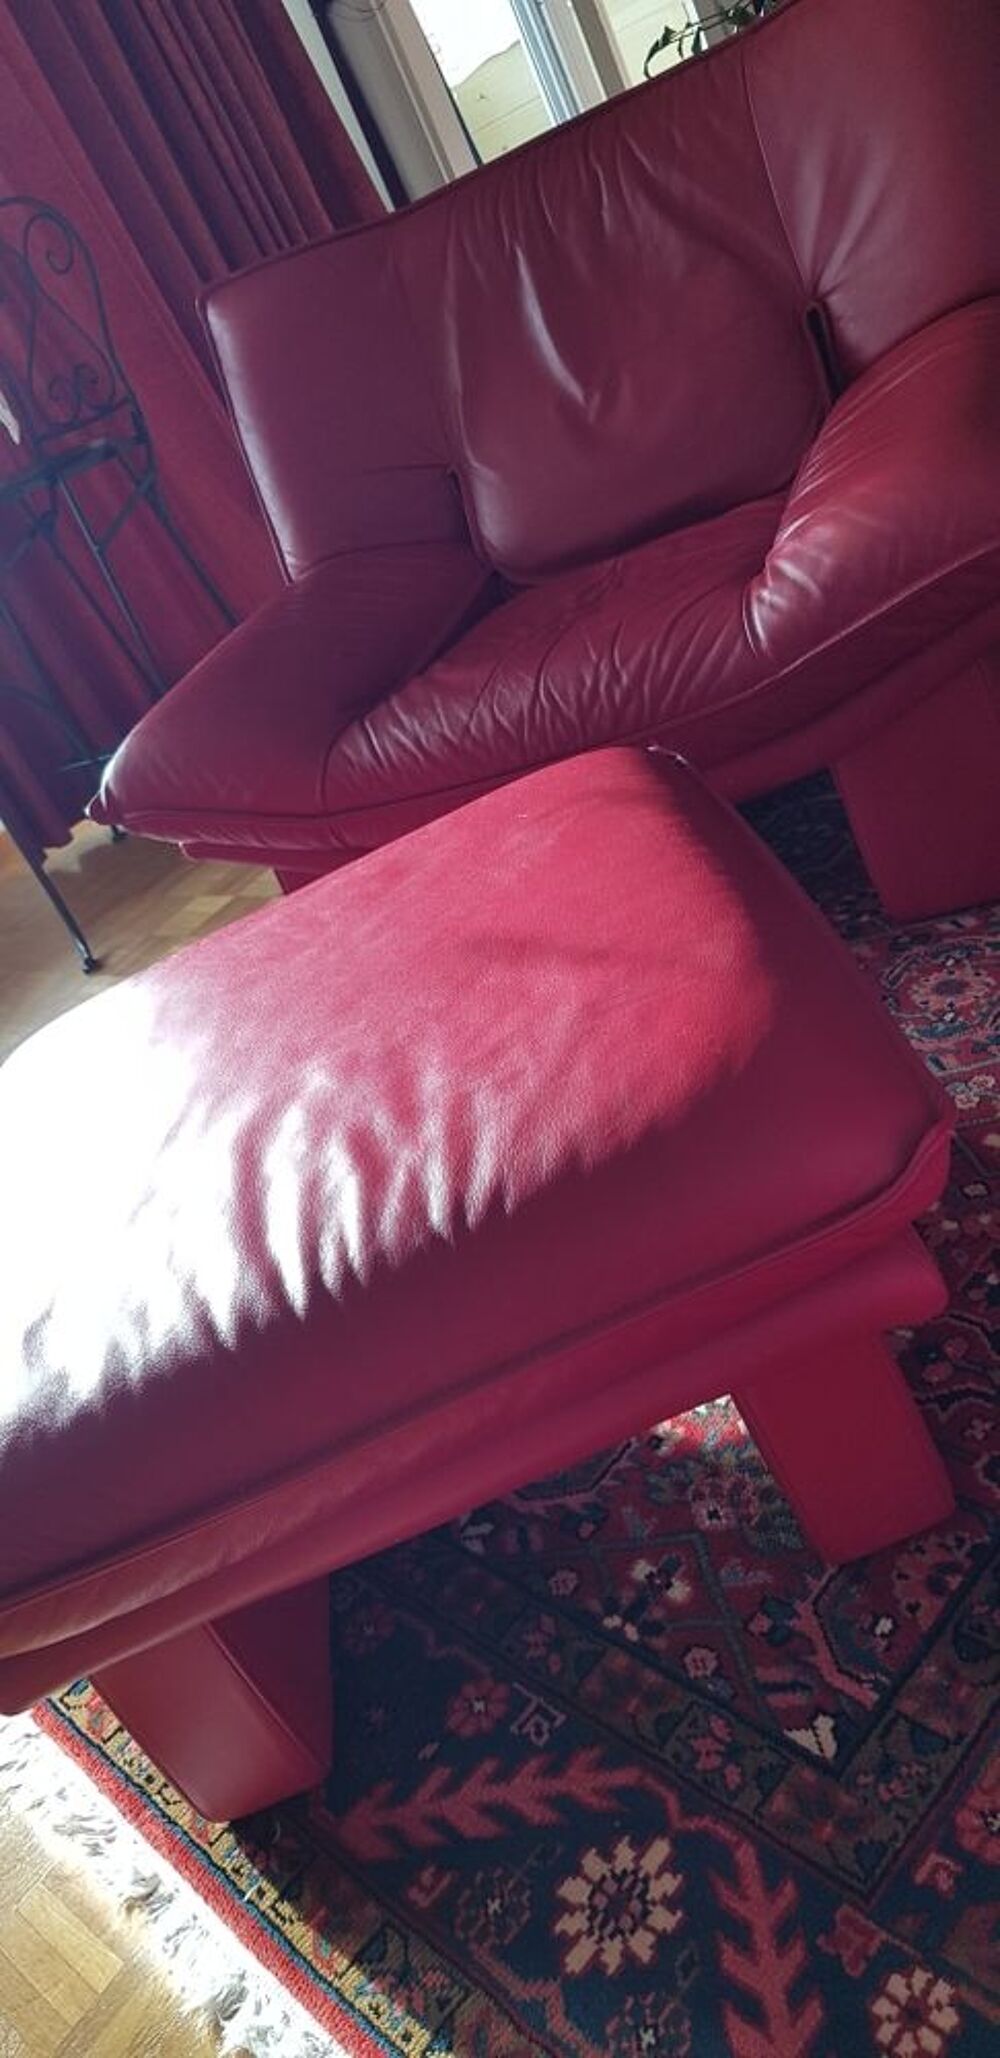 fauteuil et son pouf rouges Meubles